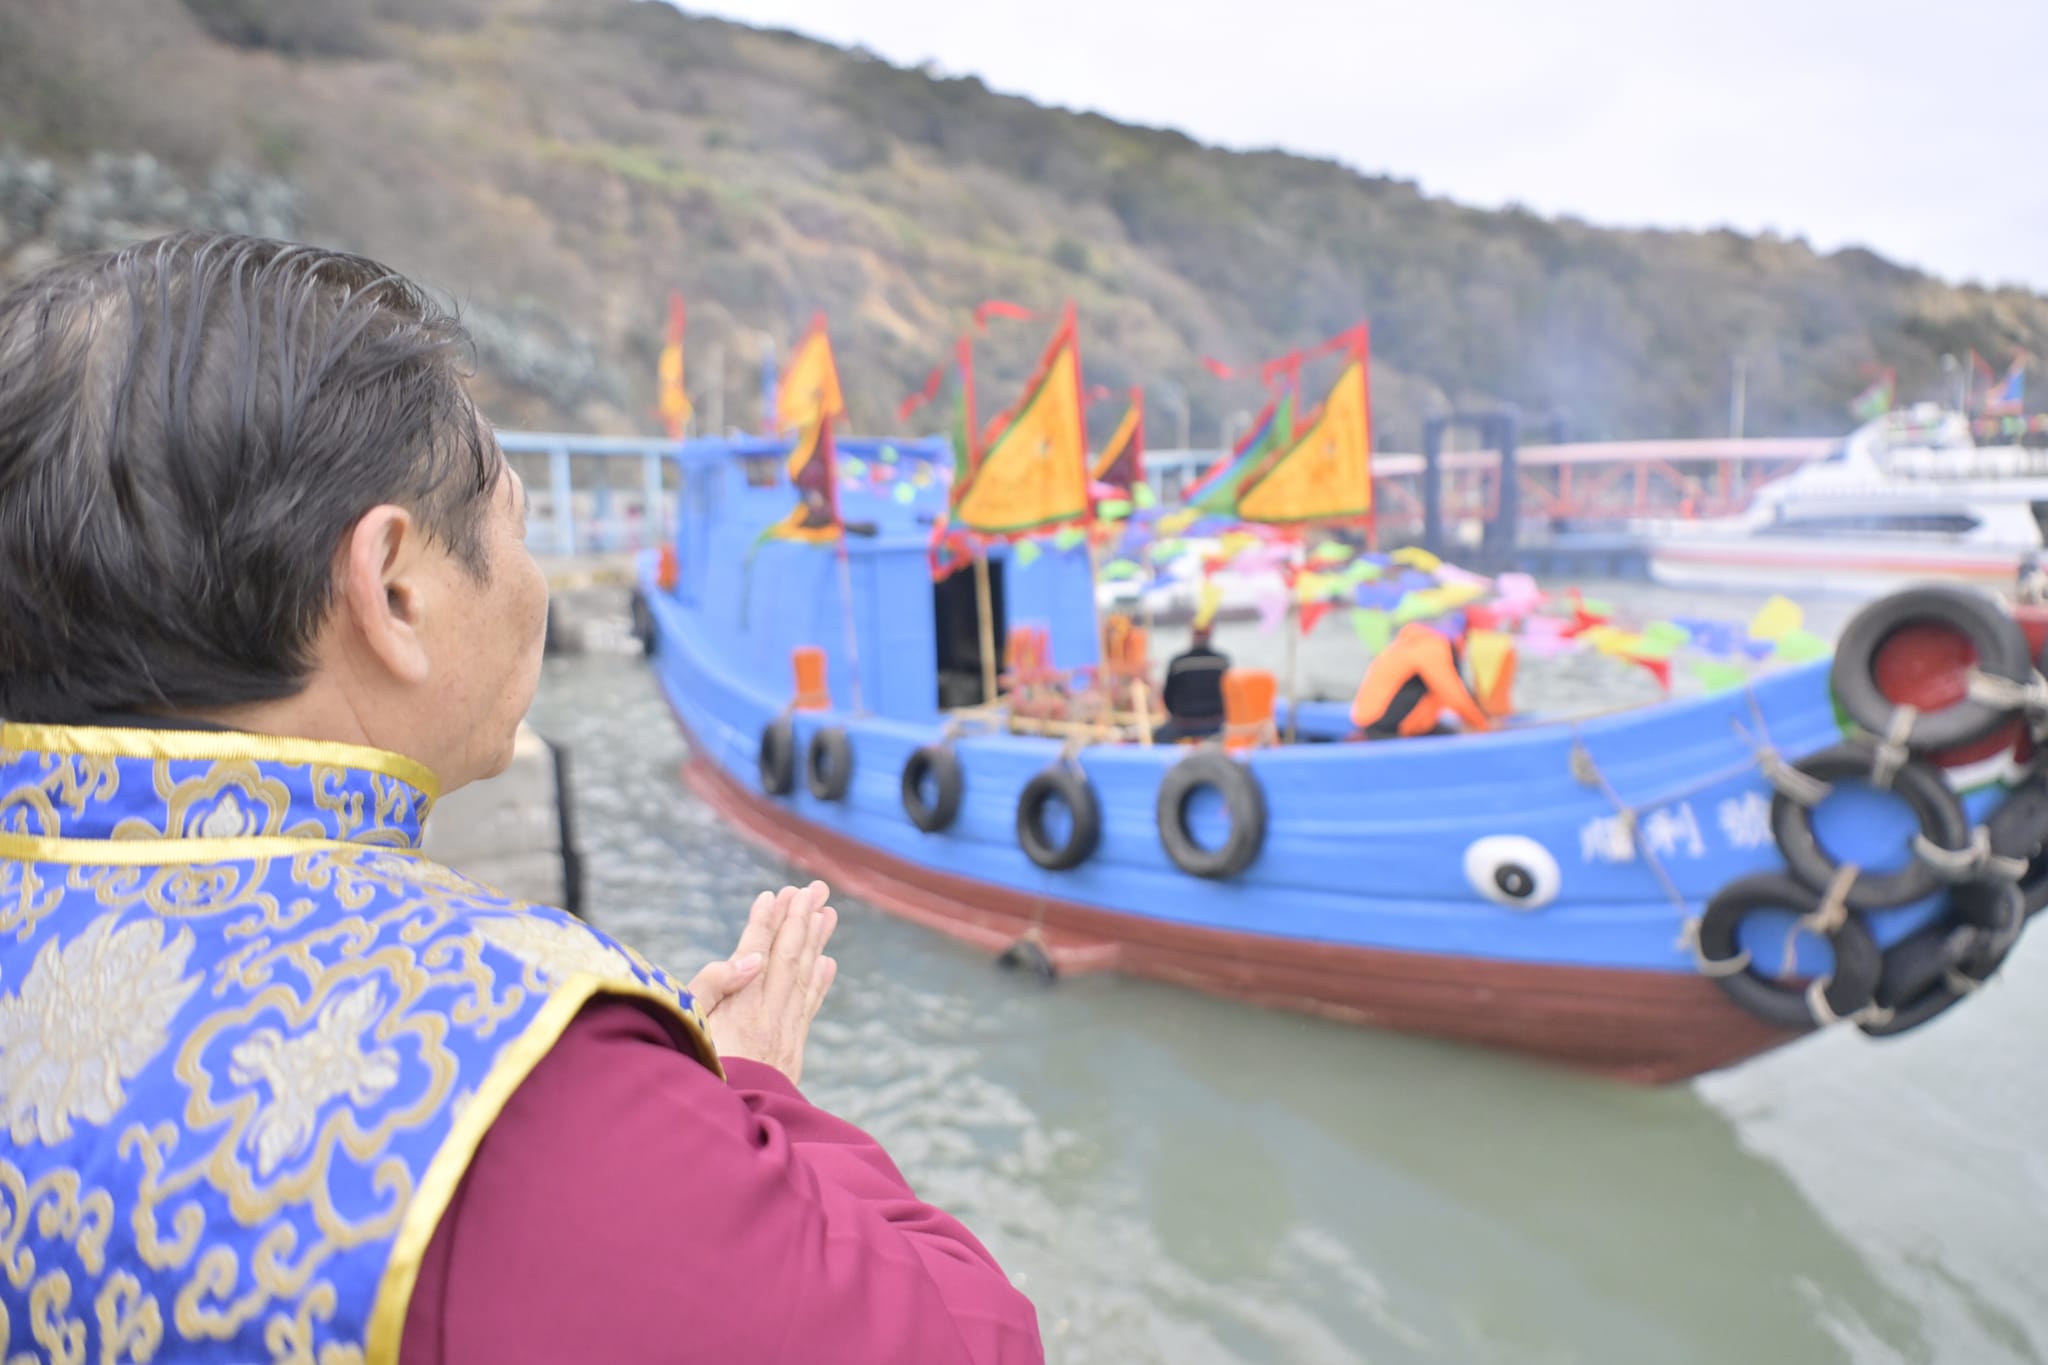 馬祖擺暝文化祭，一生必須體驗一次的宗教文化祭典